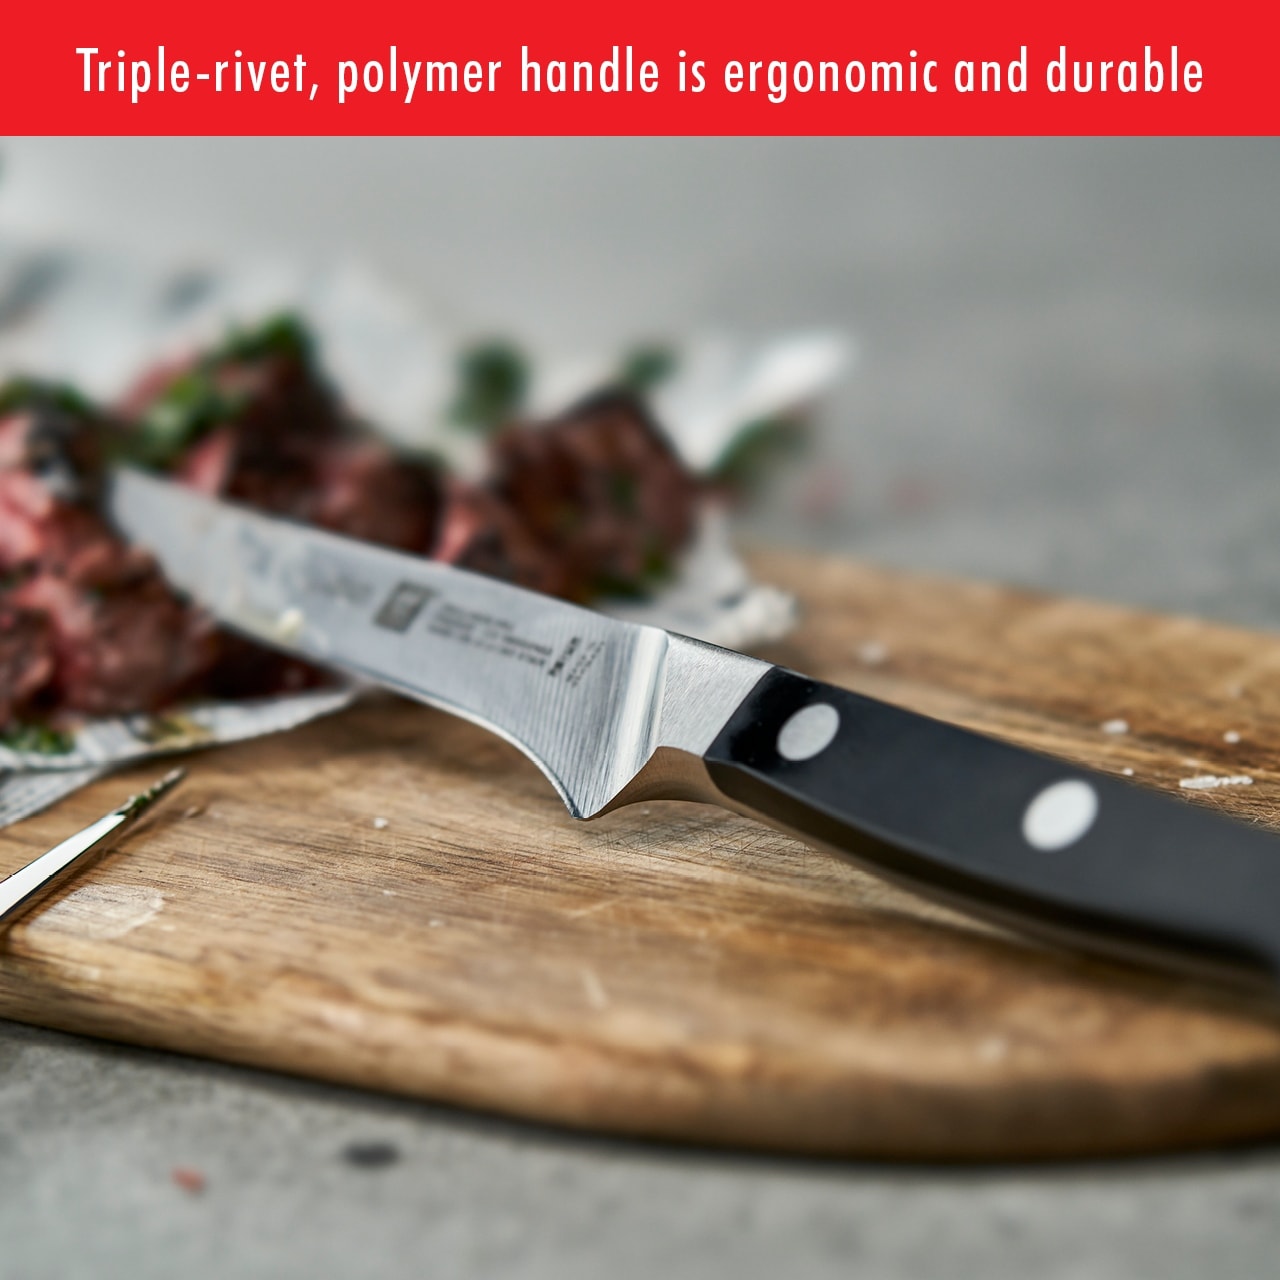 Zwilling J.A. Henckels Pro 4-Piece Steak Knife Set